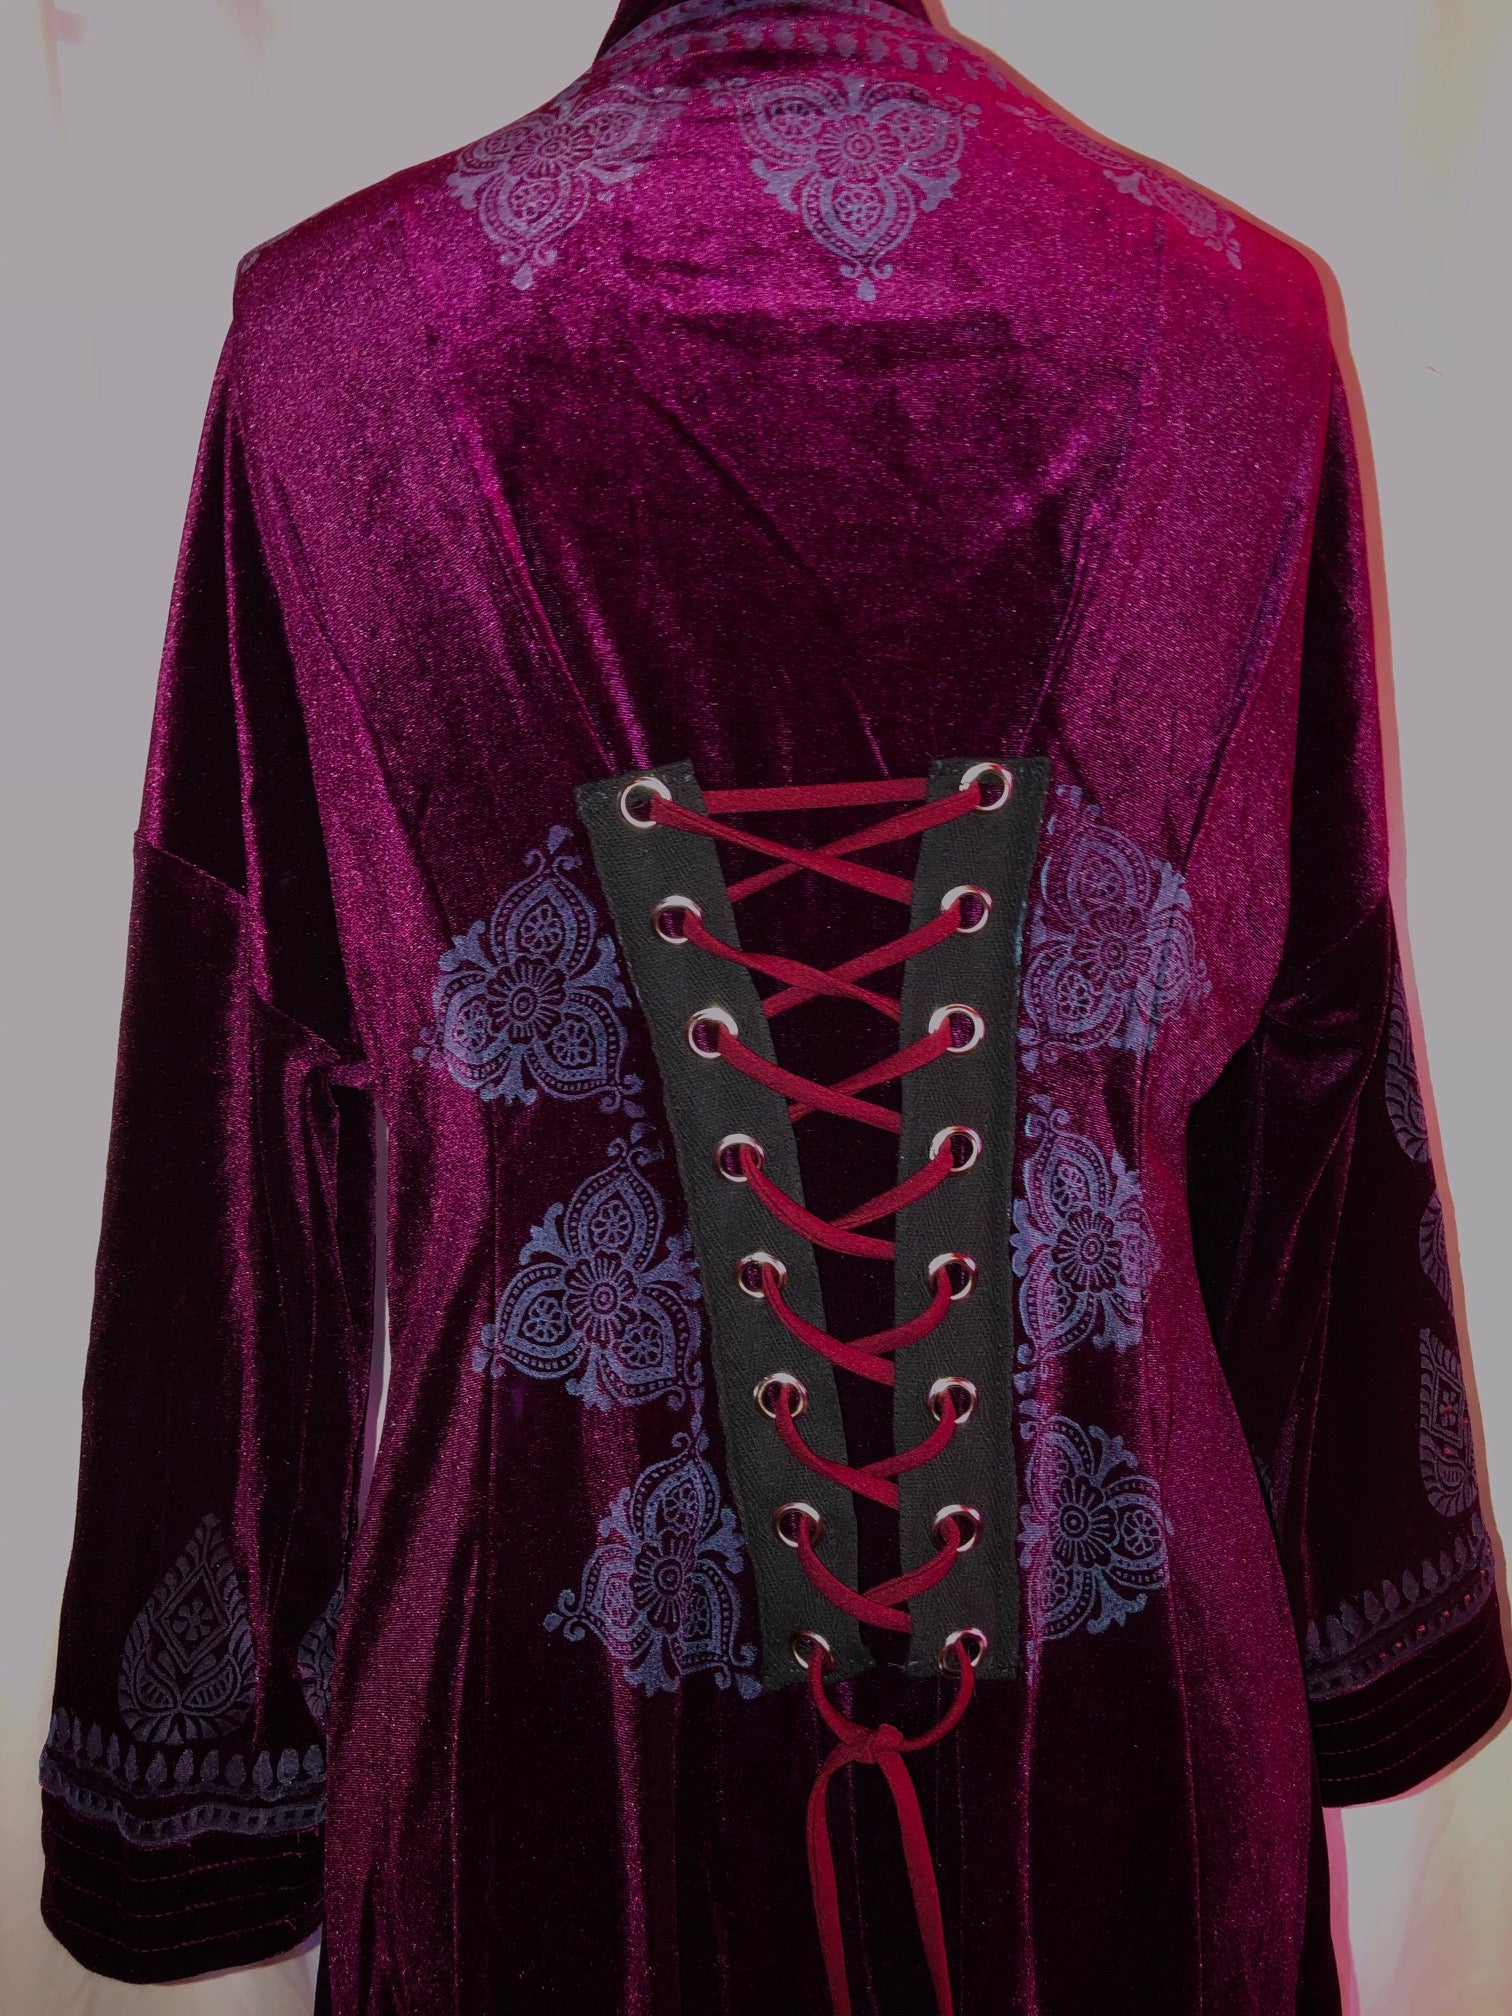 Burgundy/Cherry Stretch Velvet Dress